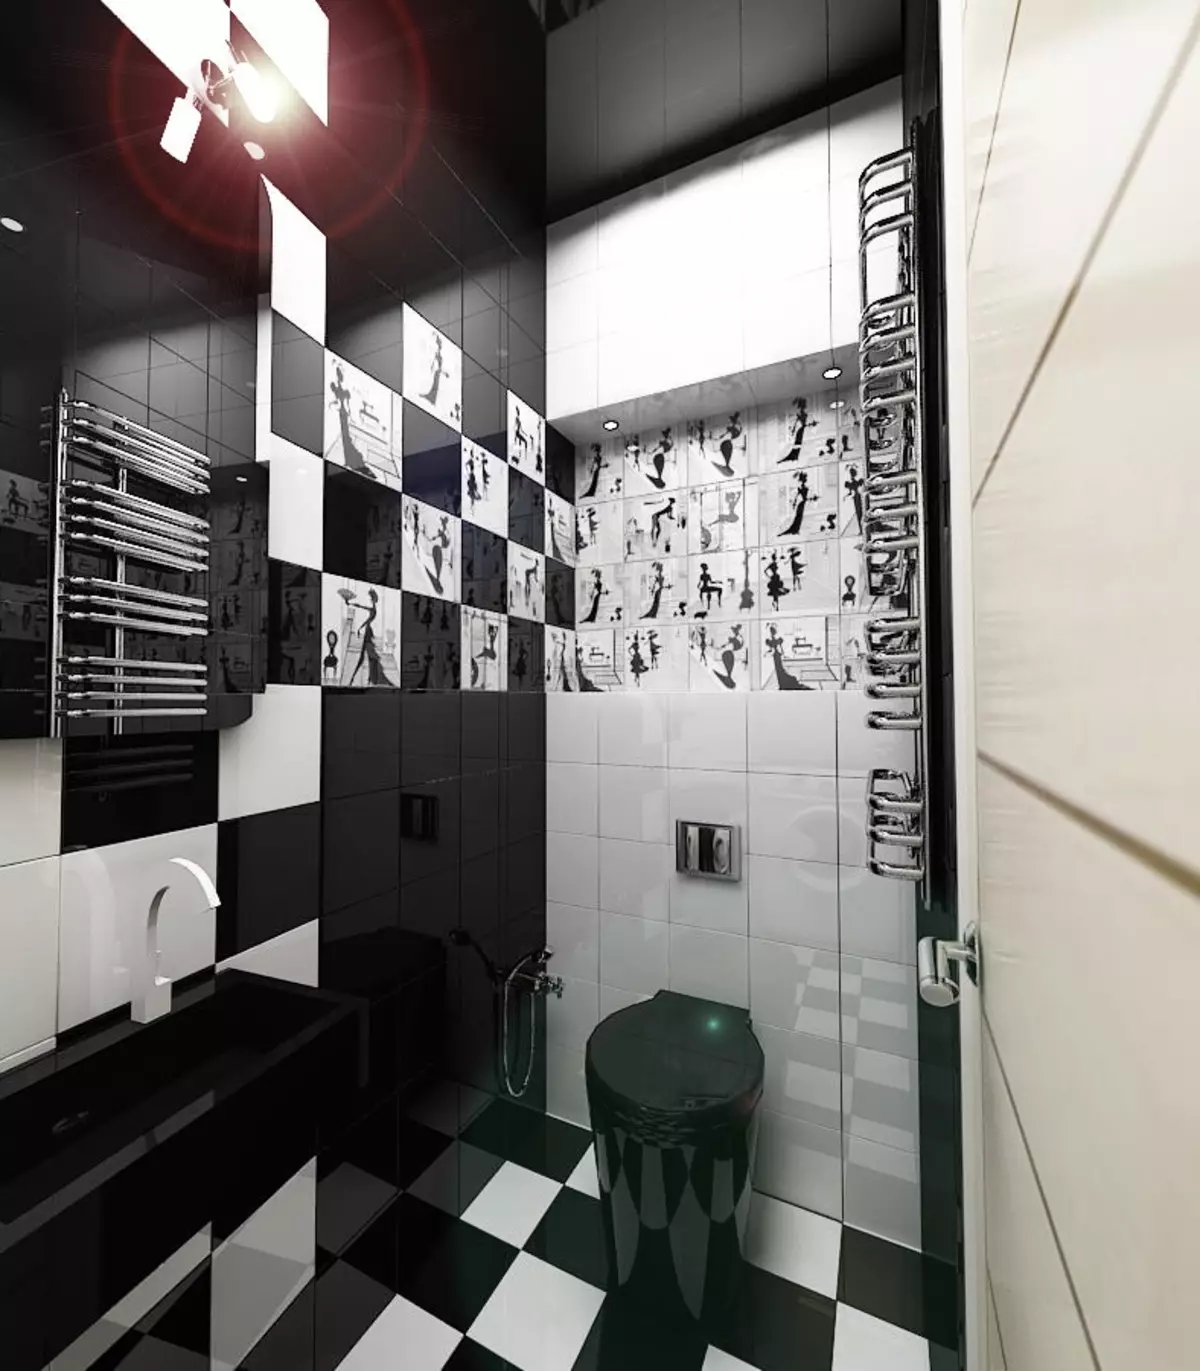 Czarna toaleta (67 zdjęć): Projekt toaletowy w kolorach czarno-białych, wybór ciemnej kolory WC w mieszkaniu, wykończenie z czarnymi i czerwonymi płytkami 10501_22